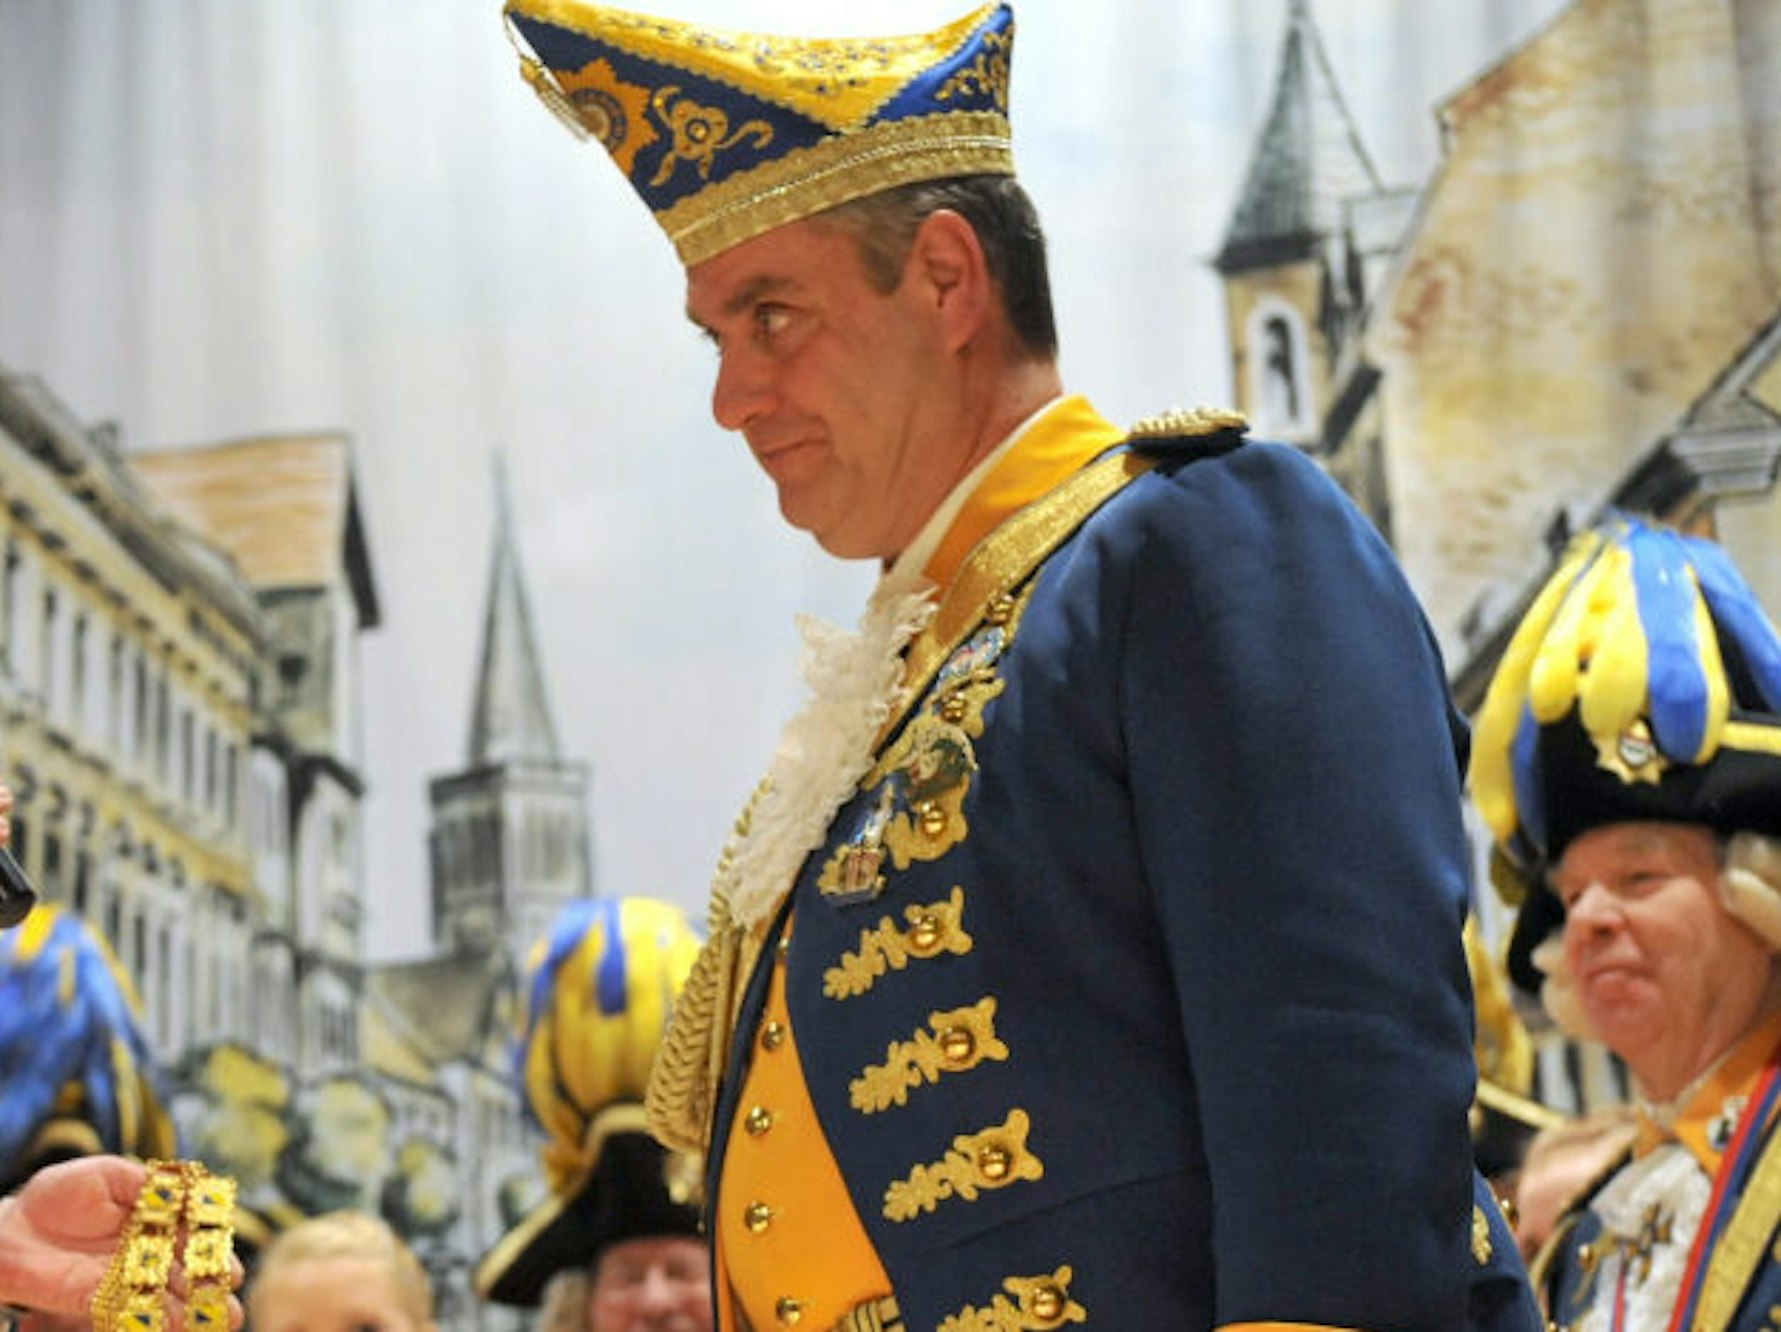 Thomas Lingenauber (r.) gibt zu: „So habe ich mir meinen Antritt als Präsident des Festkomitees Leverkusener Karneval nicht vorgestellt.“